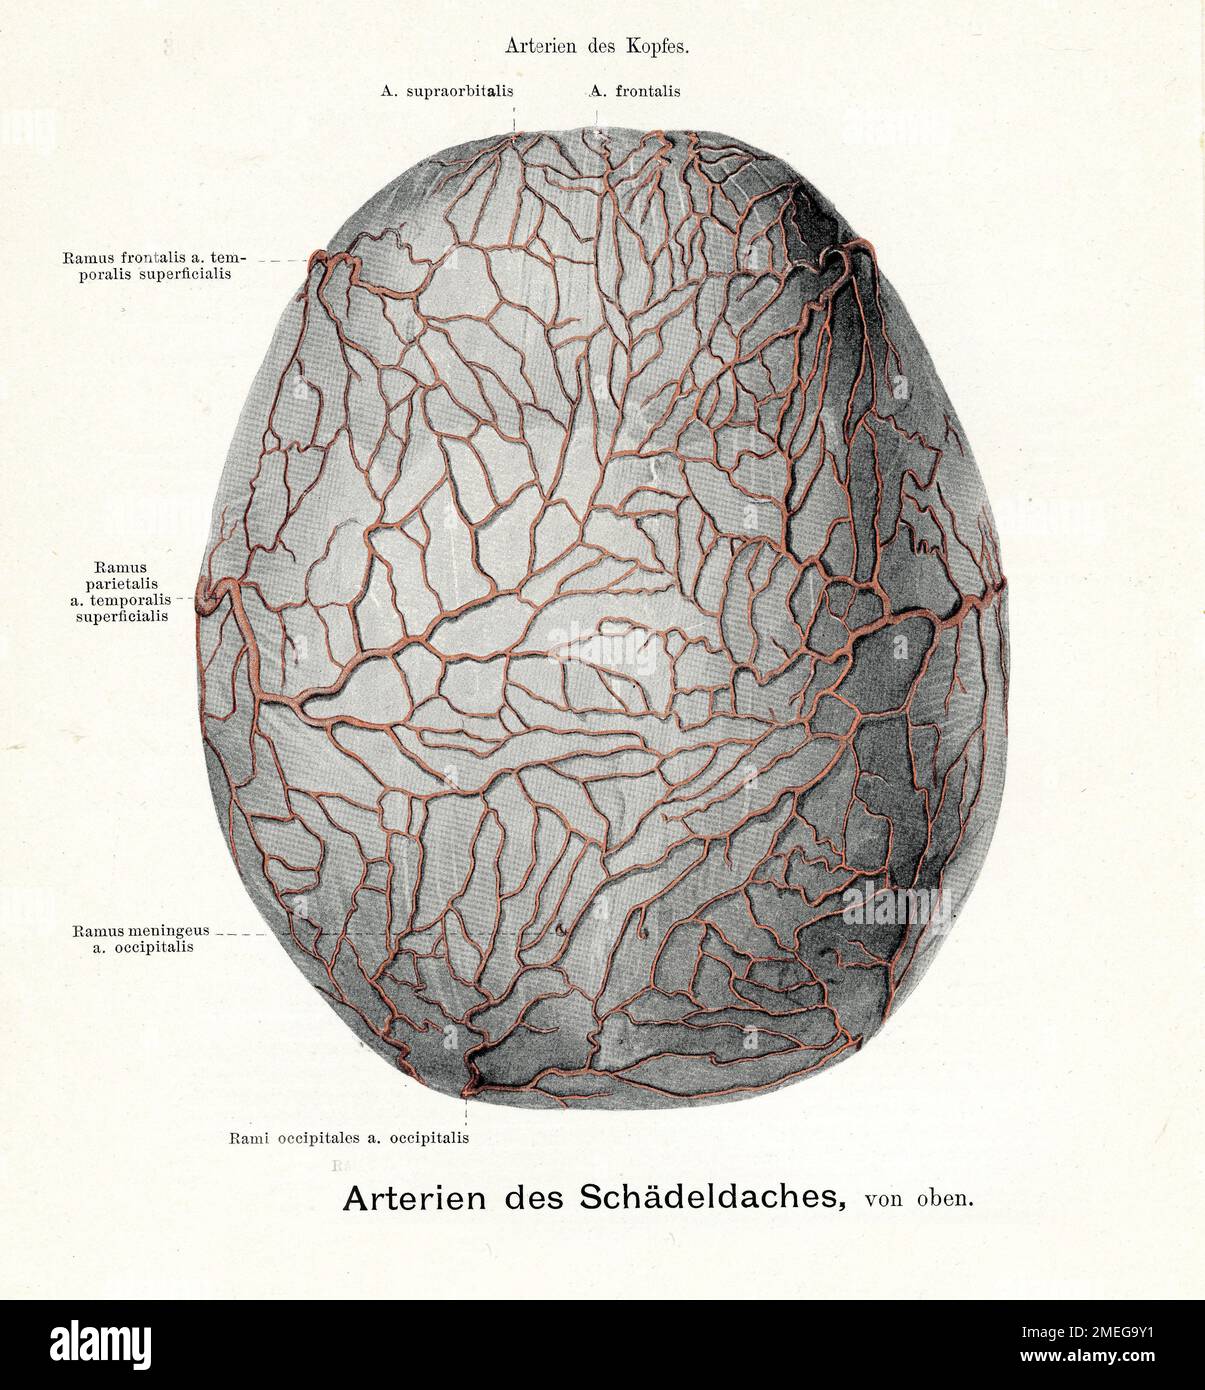 Artère crânienne - Illustration ancienne de l'anatomie, avec des descriptions anatomiques allemandes Banque D'Images